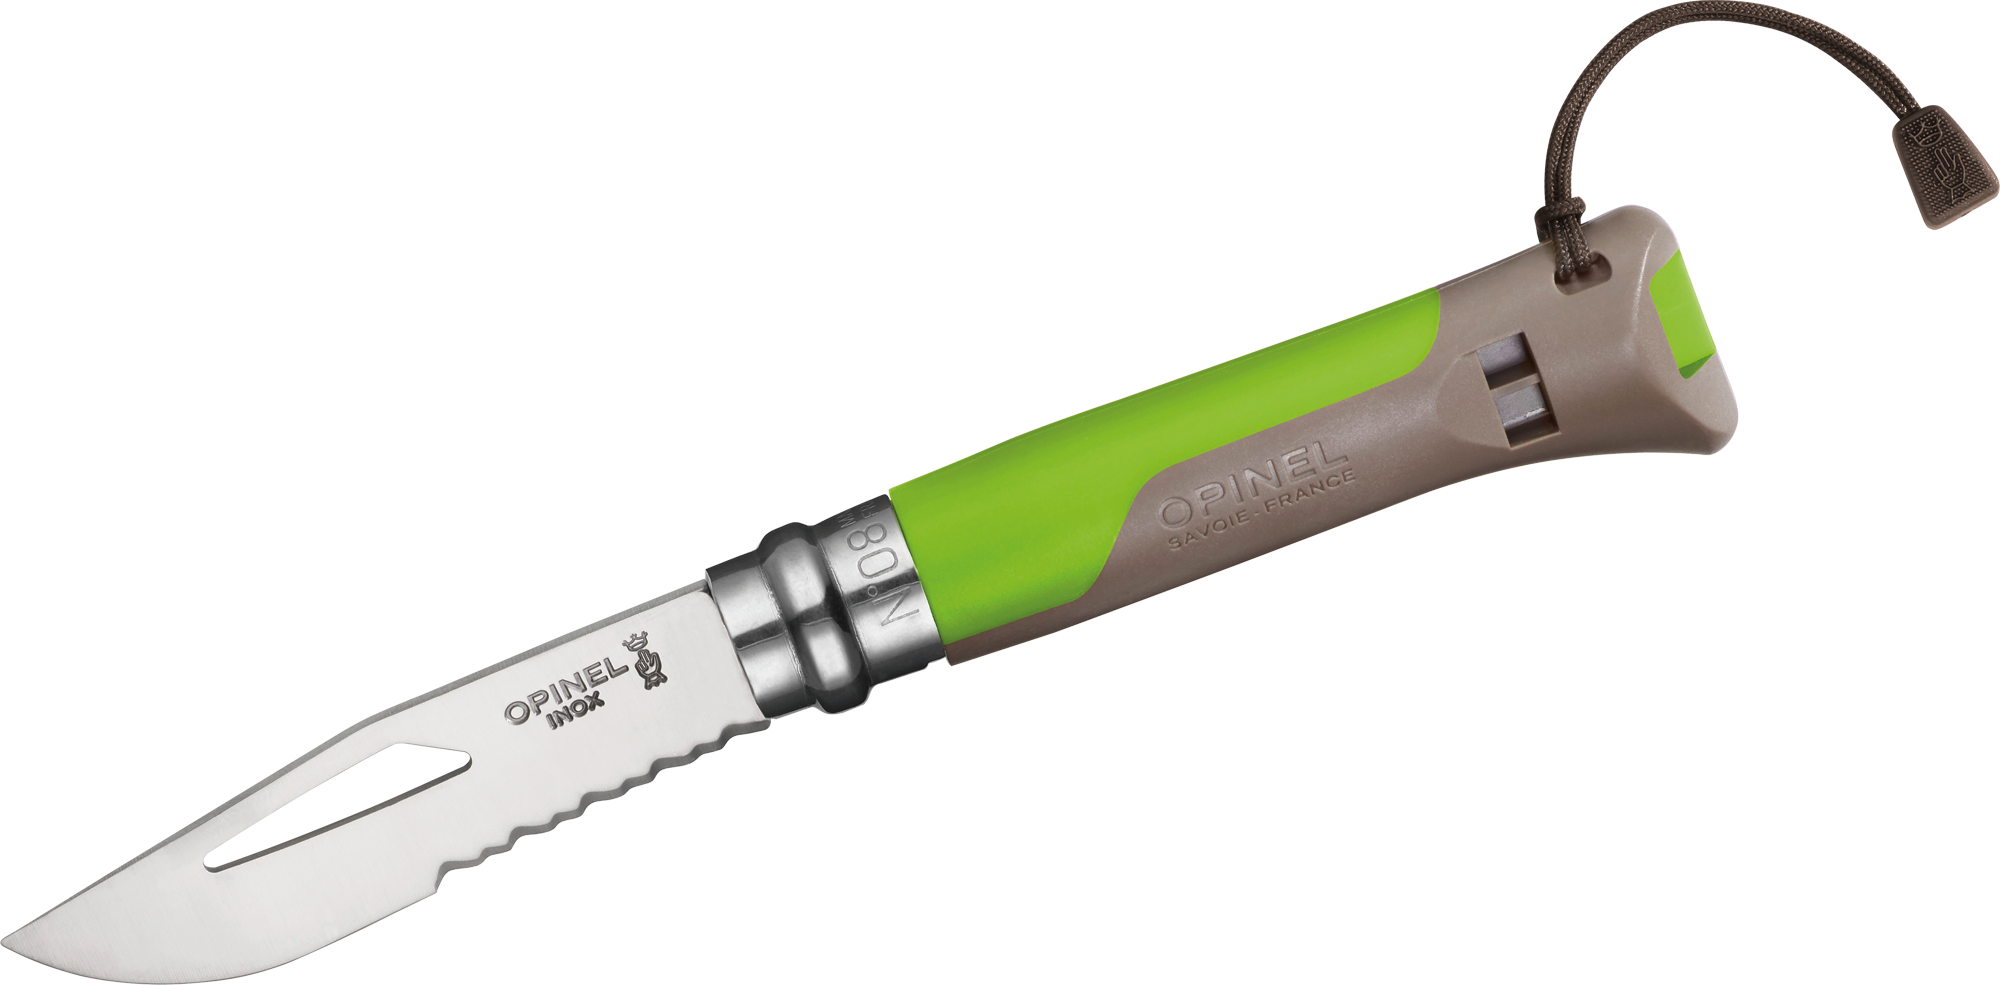 Opinel N°08 Outdoor Taschenmesser mit Signalpfeife Klingenlänge 8,5 cm grün